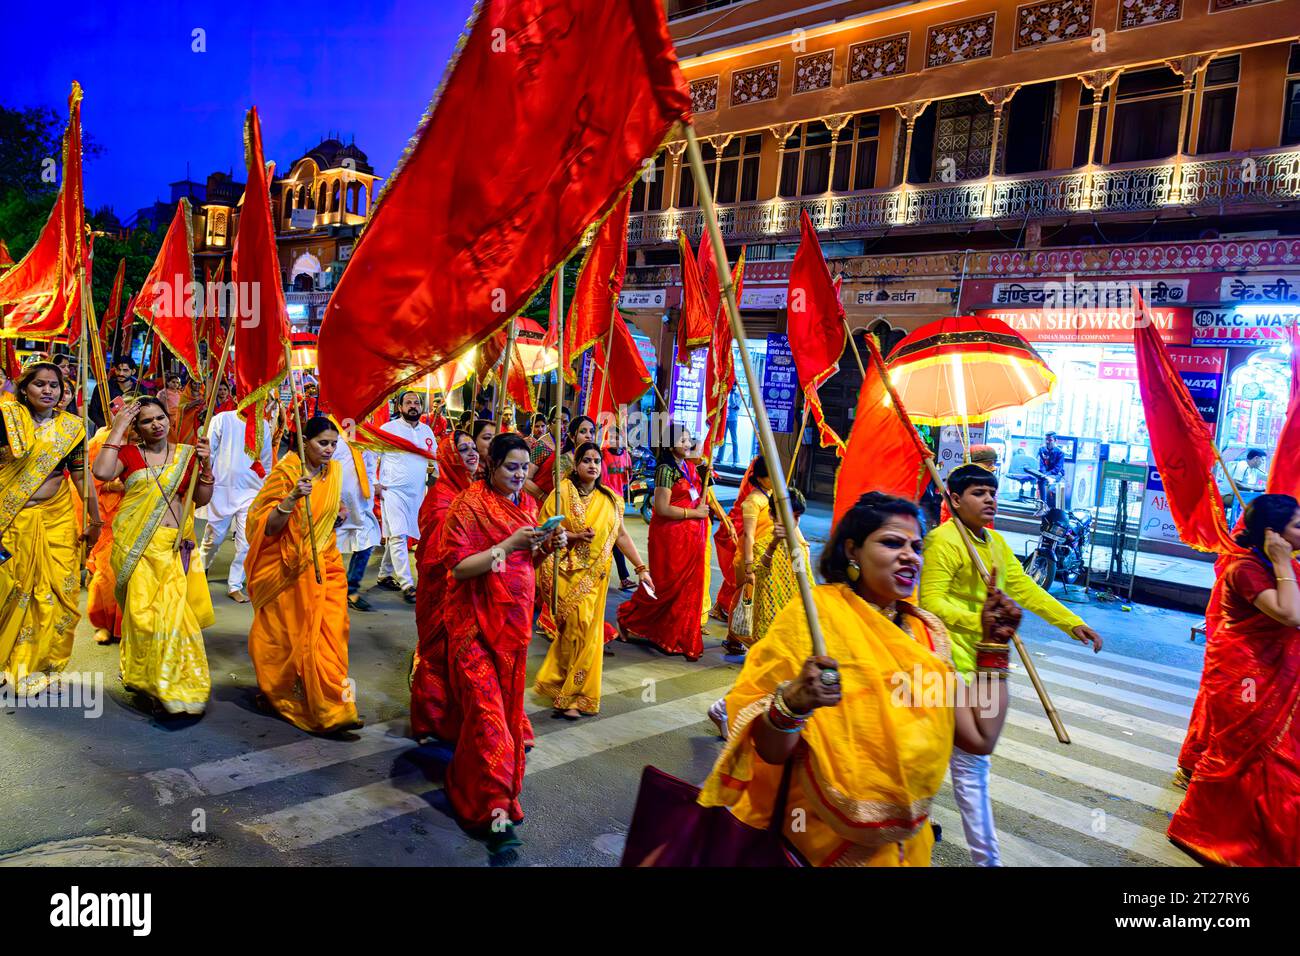 Gli uomini e le donne indù partecipano a una processione religiosa lungo Chaura Rasta Road a Jaipur Foto Stock